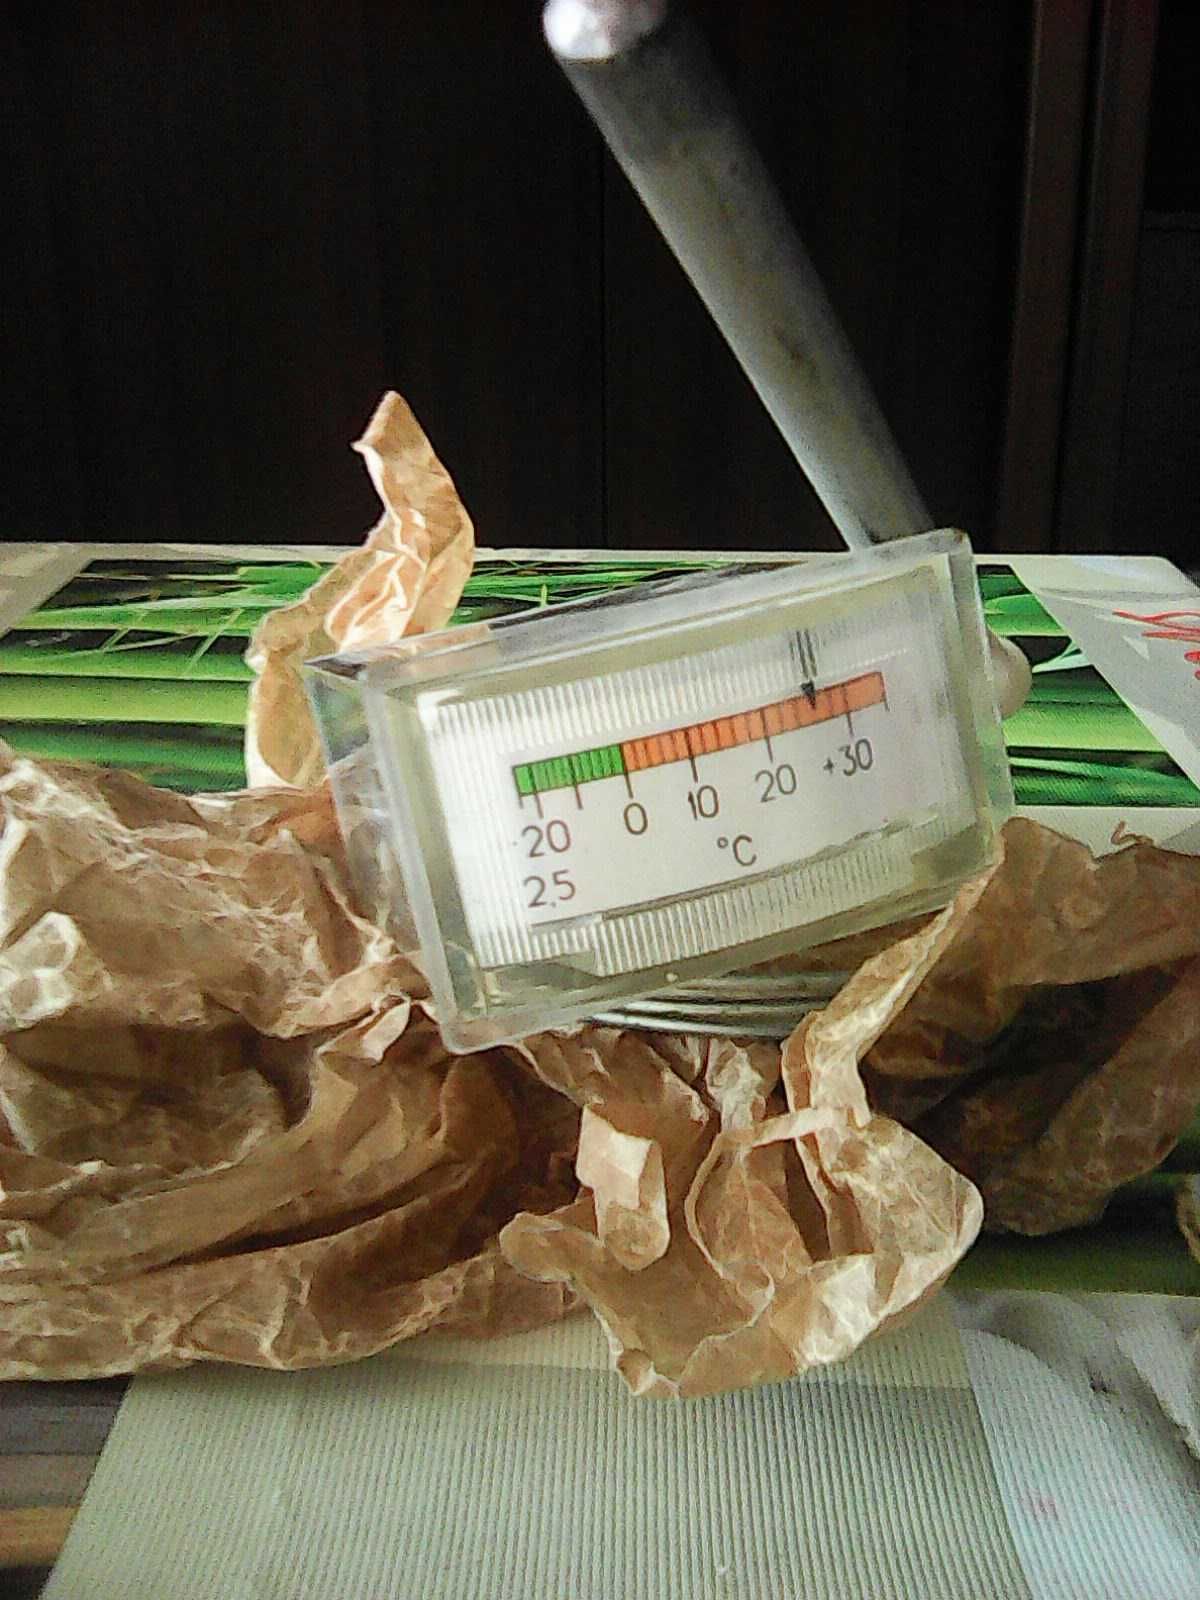 Продам термометр ТКП - СХ УХЛ2.1 Диапазон от -25 до +35 градусов.